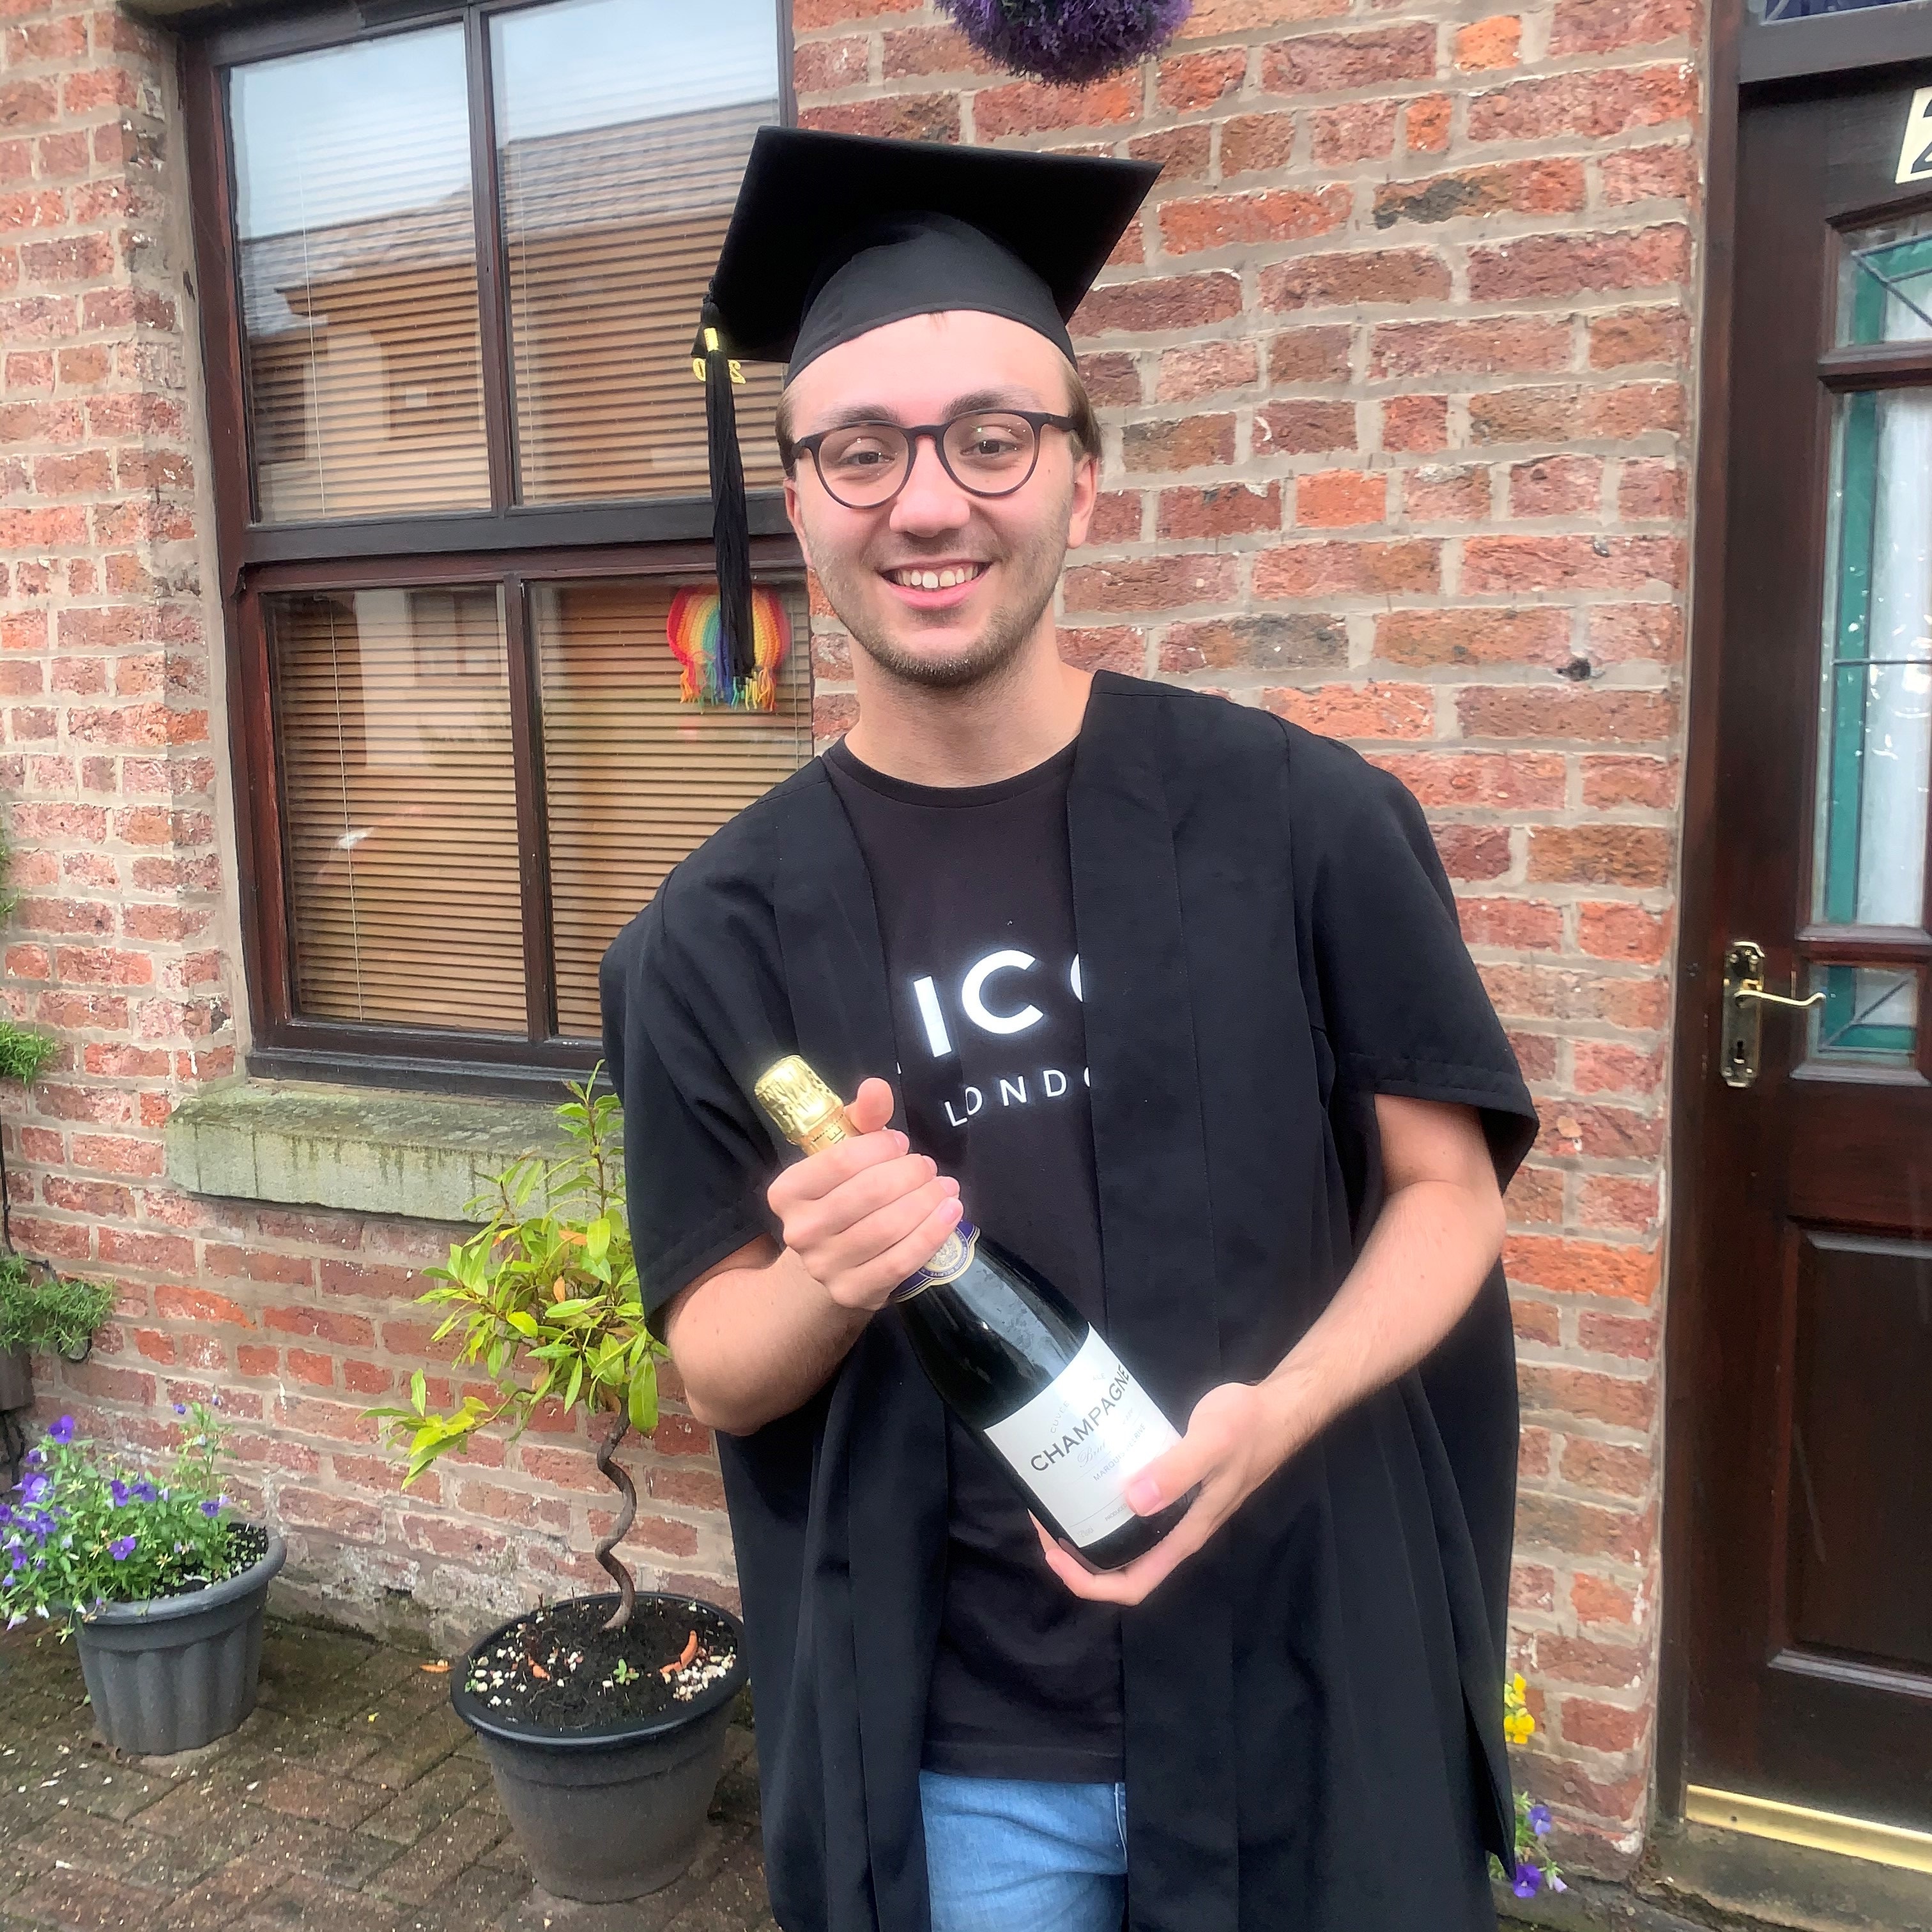 Jack's graduation